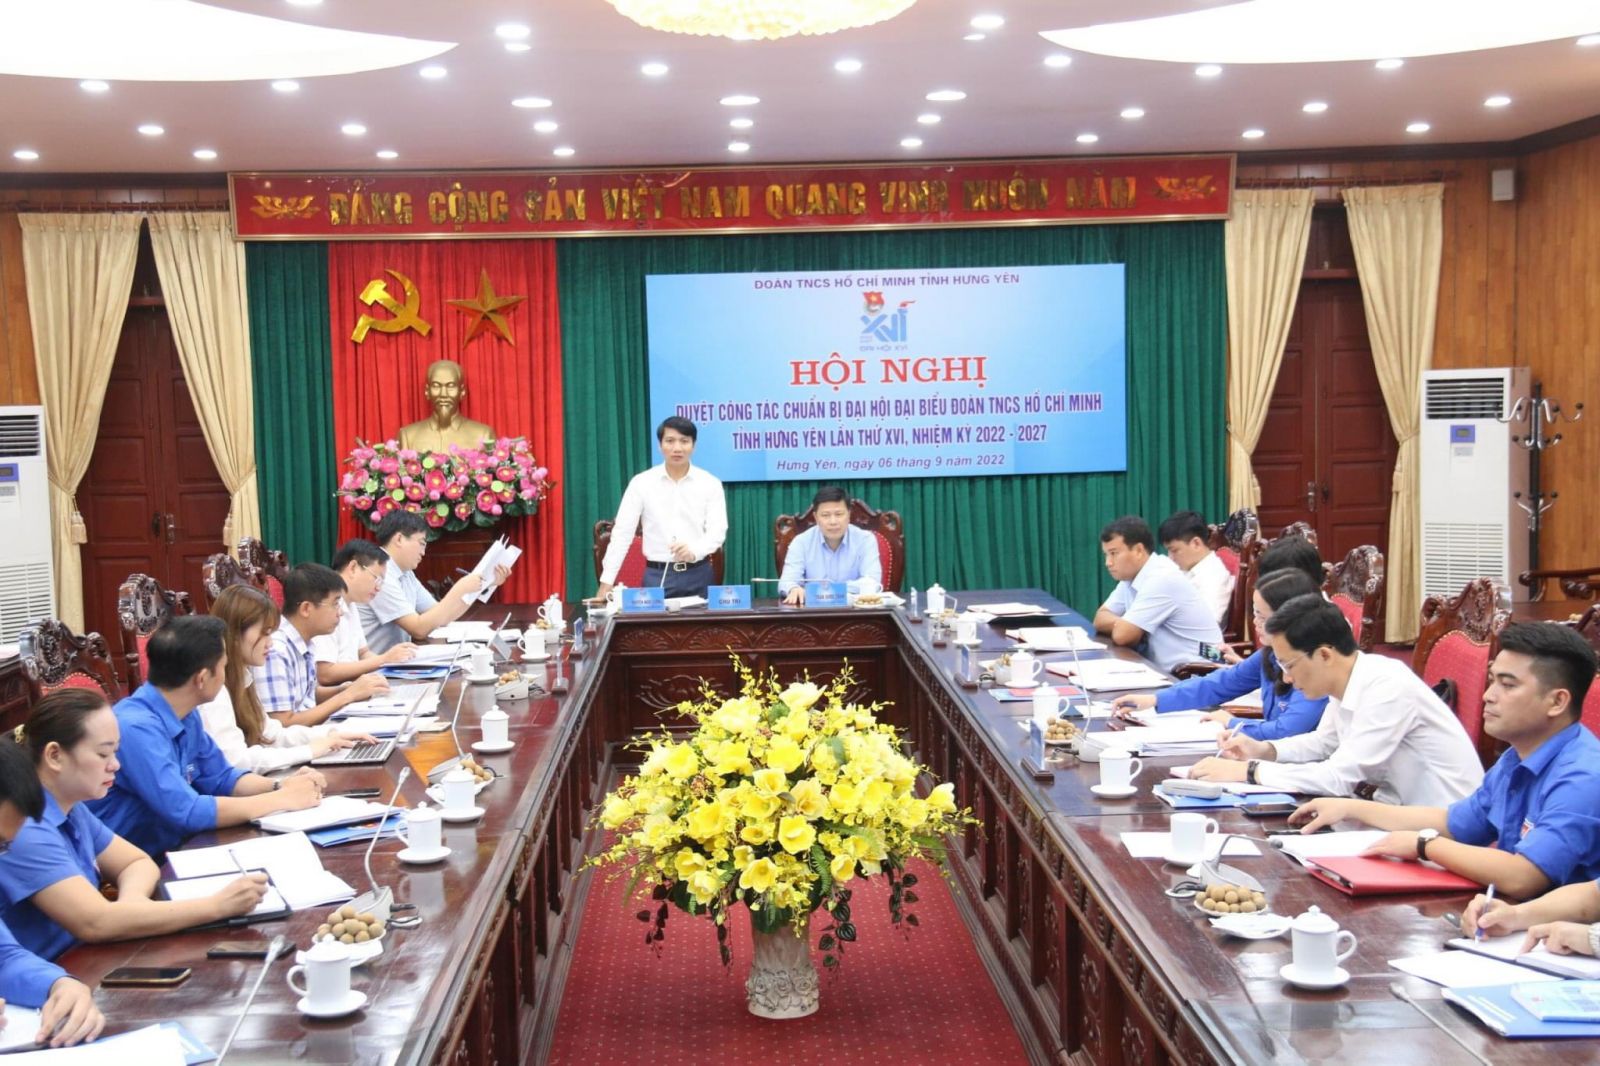 Đại hội đại biểu Đoàn TNCS Hồ Chí Minh tỉnh Hưng Yên lần thứ XVI, nhiệm kỳ 2022 - 2027 diễn ra trong 02 ngày 26, 27/9/2022